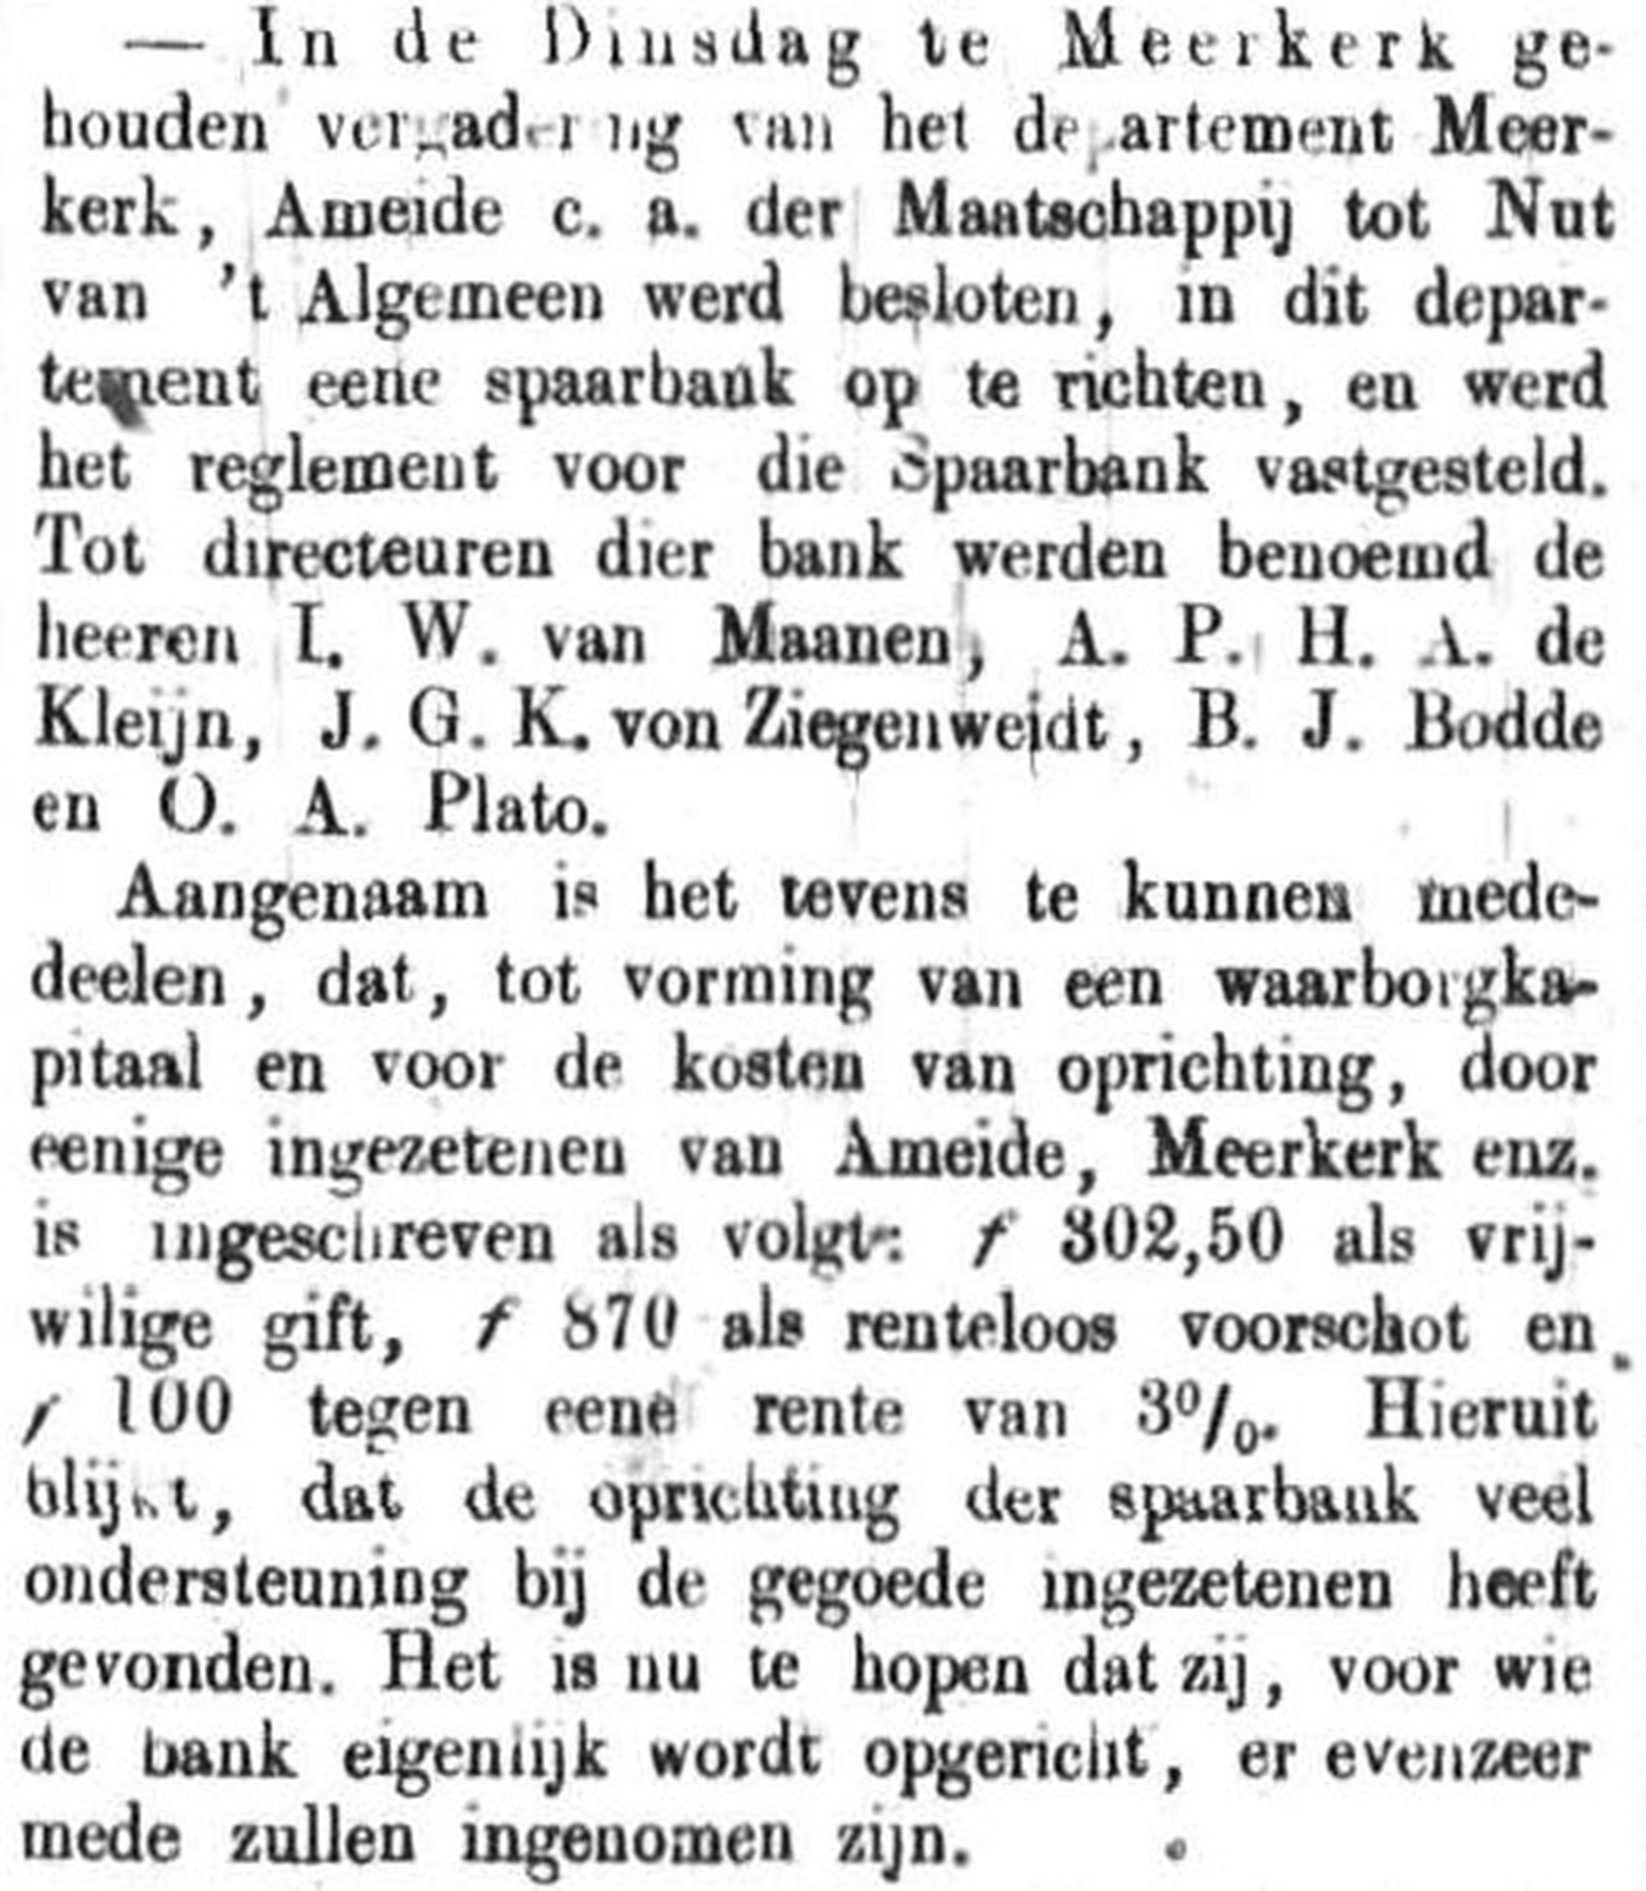 Schoonhovensche Courant 00119 1871-10-08 artikel 2